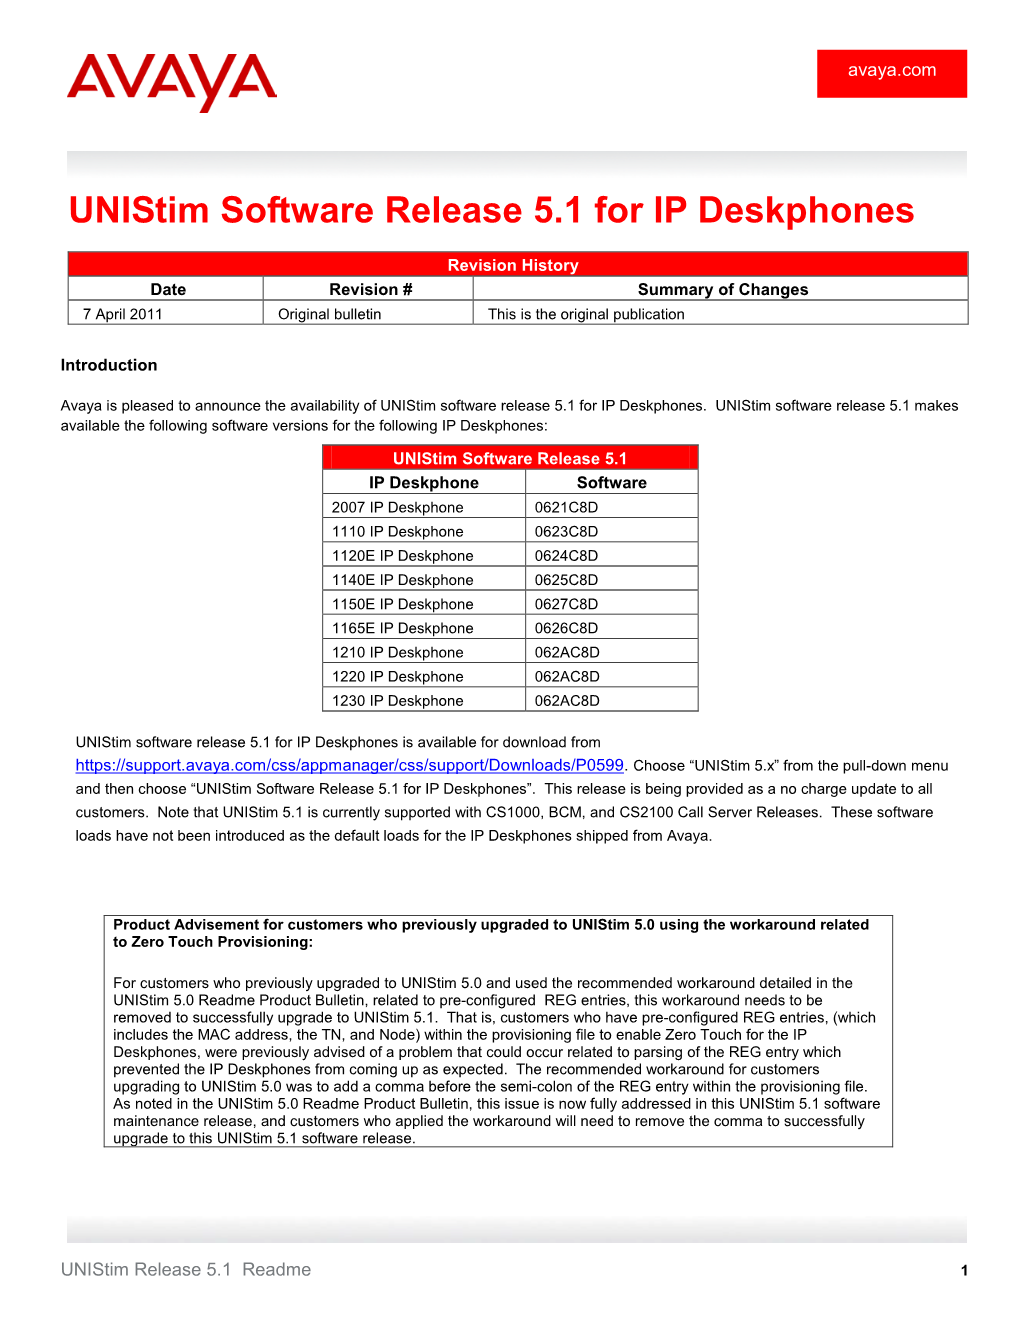 Unistim Software Release 5.1 for IP Deskphones